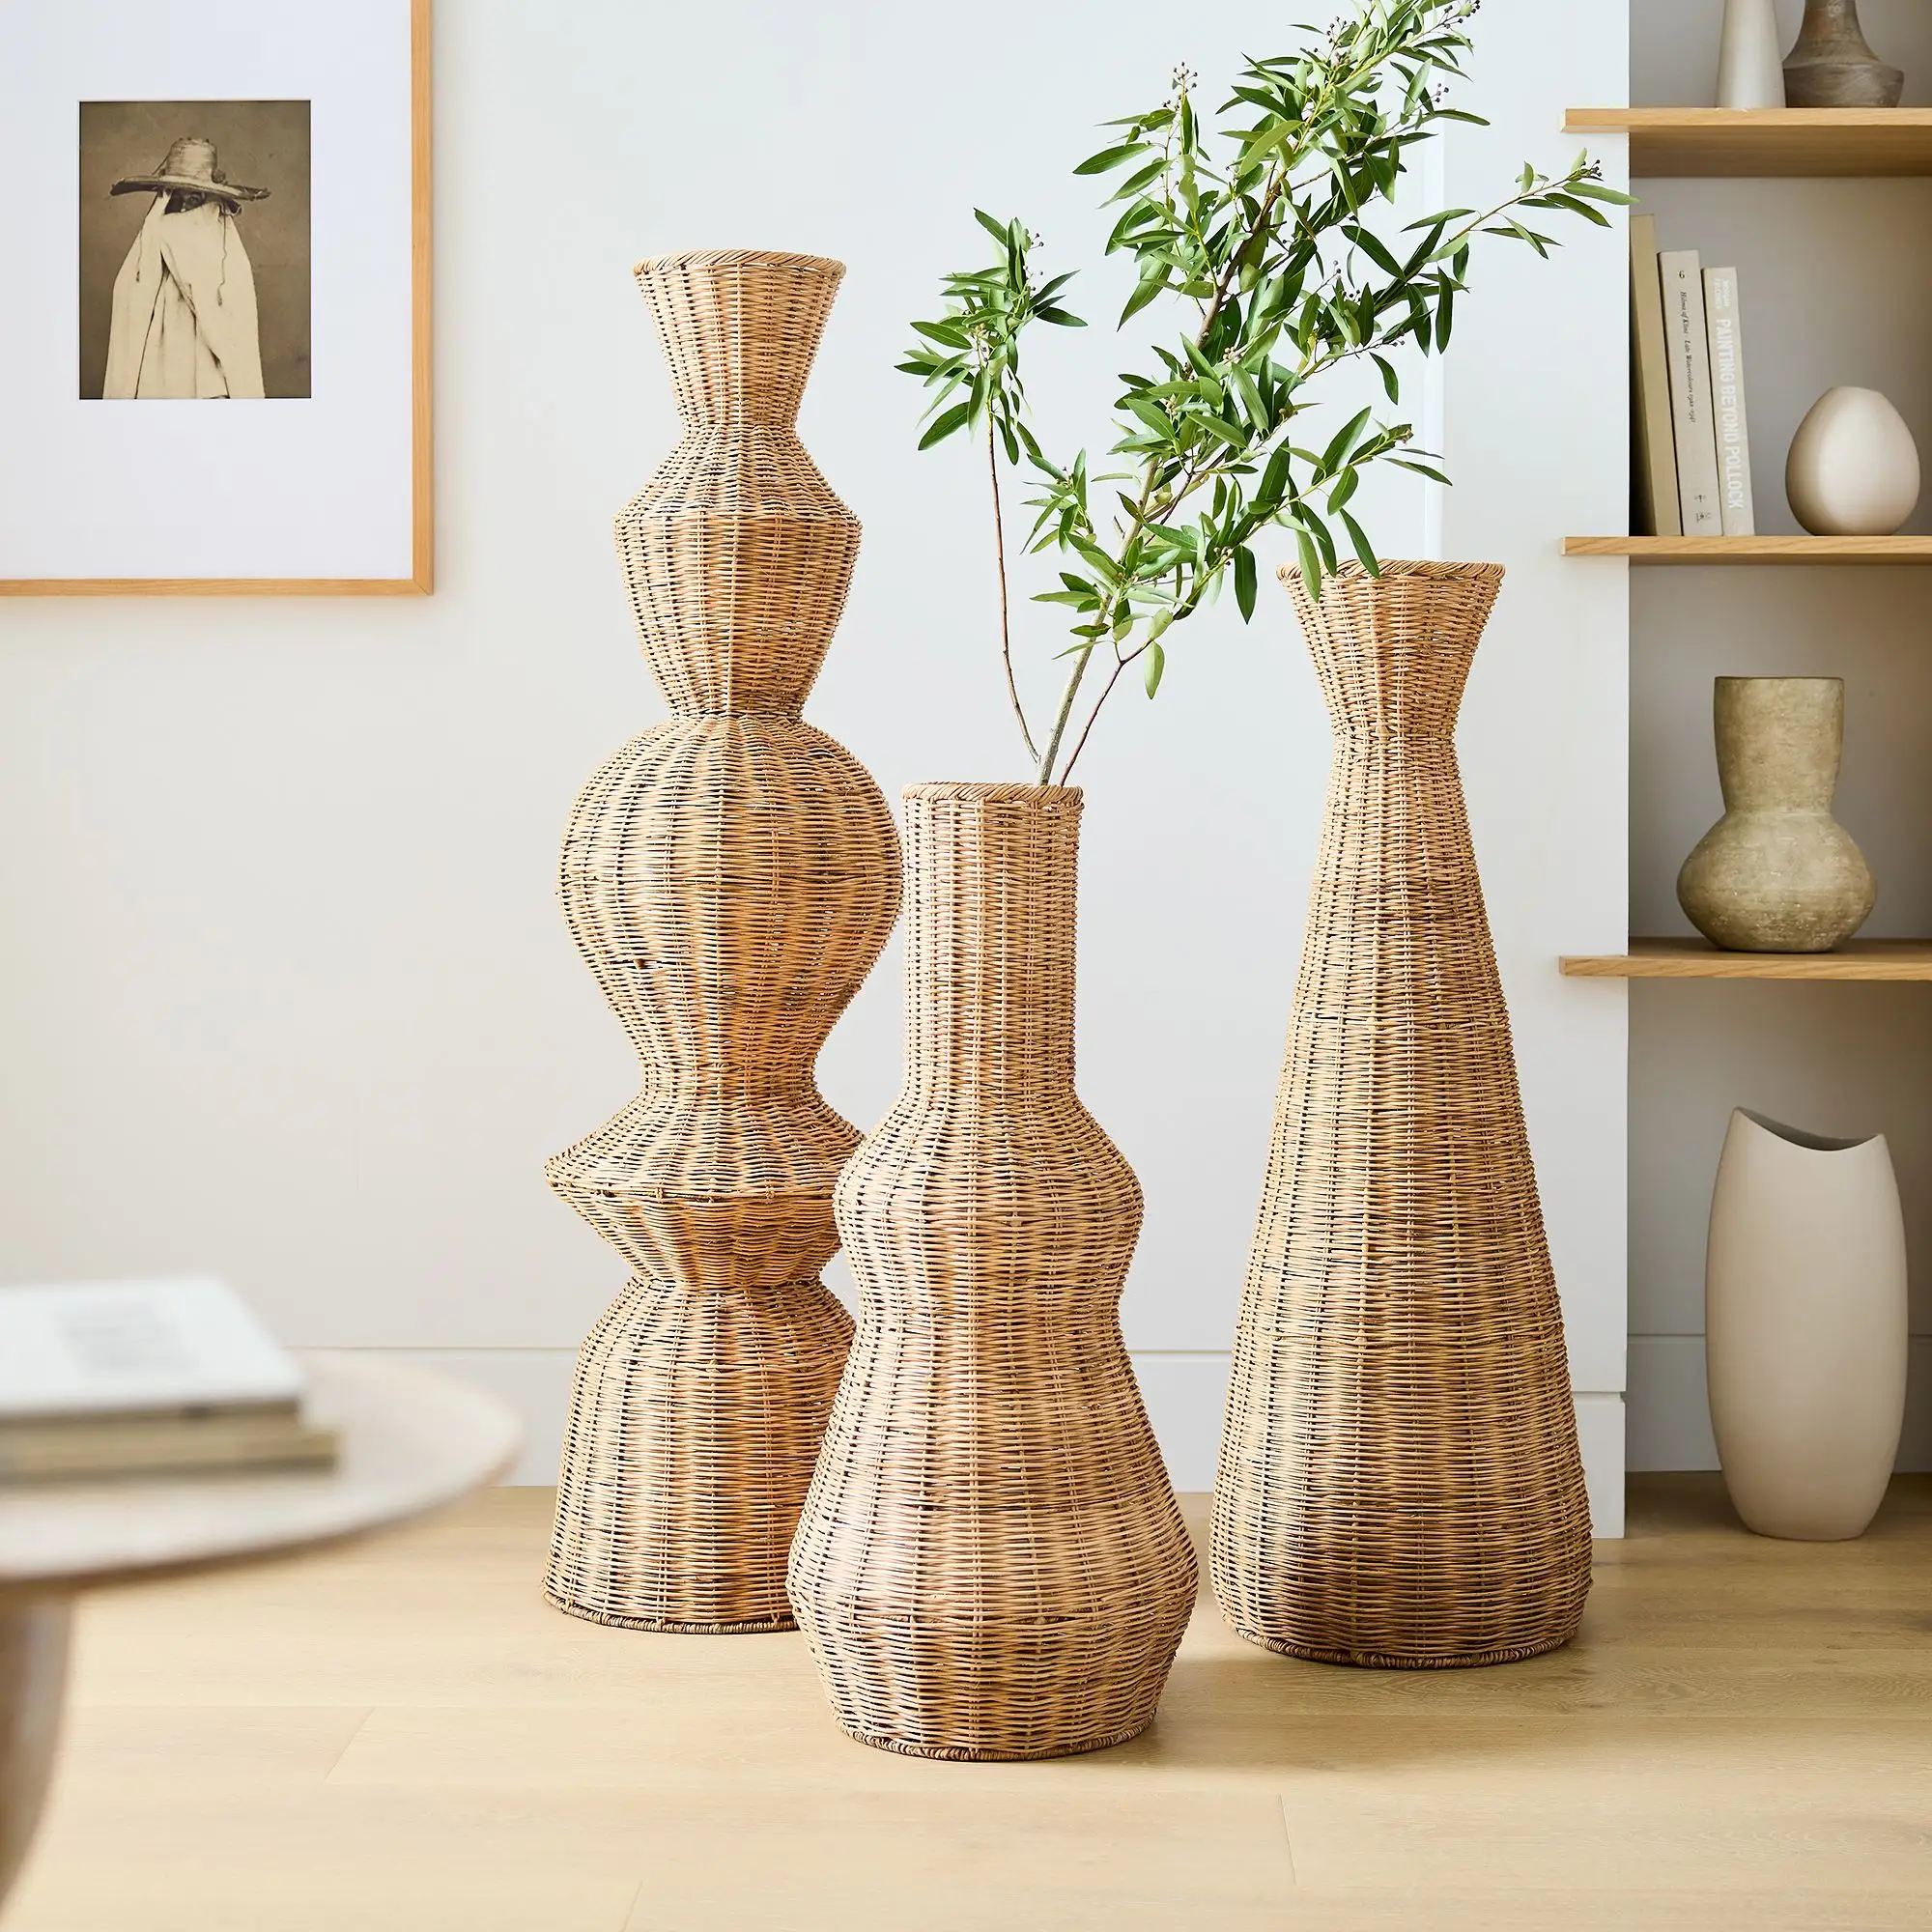 Высококачественные плетеные напольные вазы 3 формы 100% натурального ротанга | Новый интерьер для домашнего отеля, ресторана